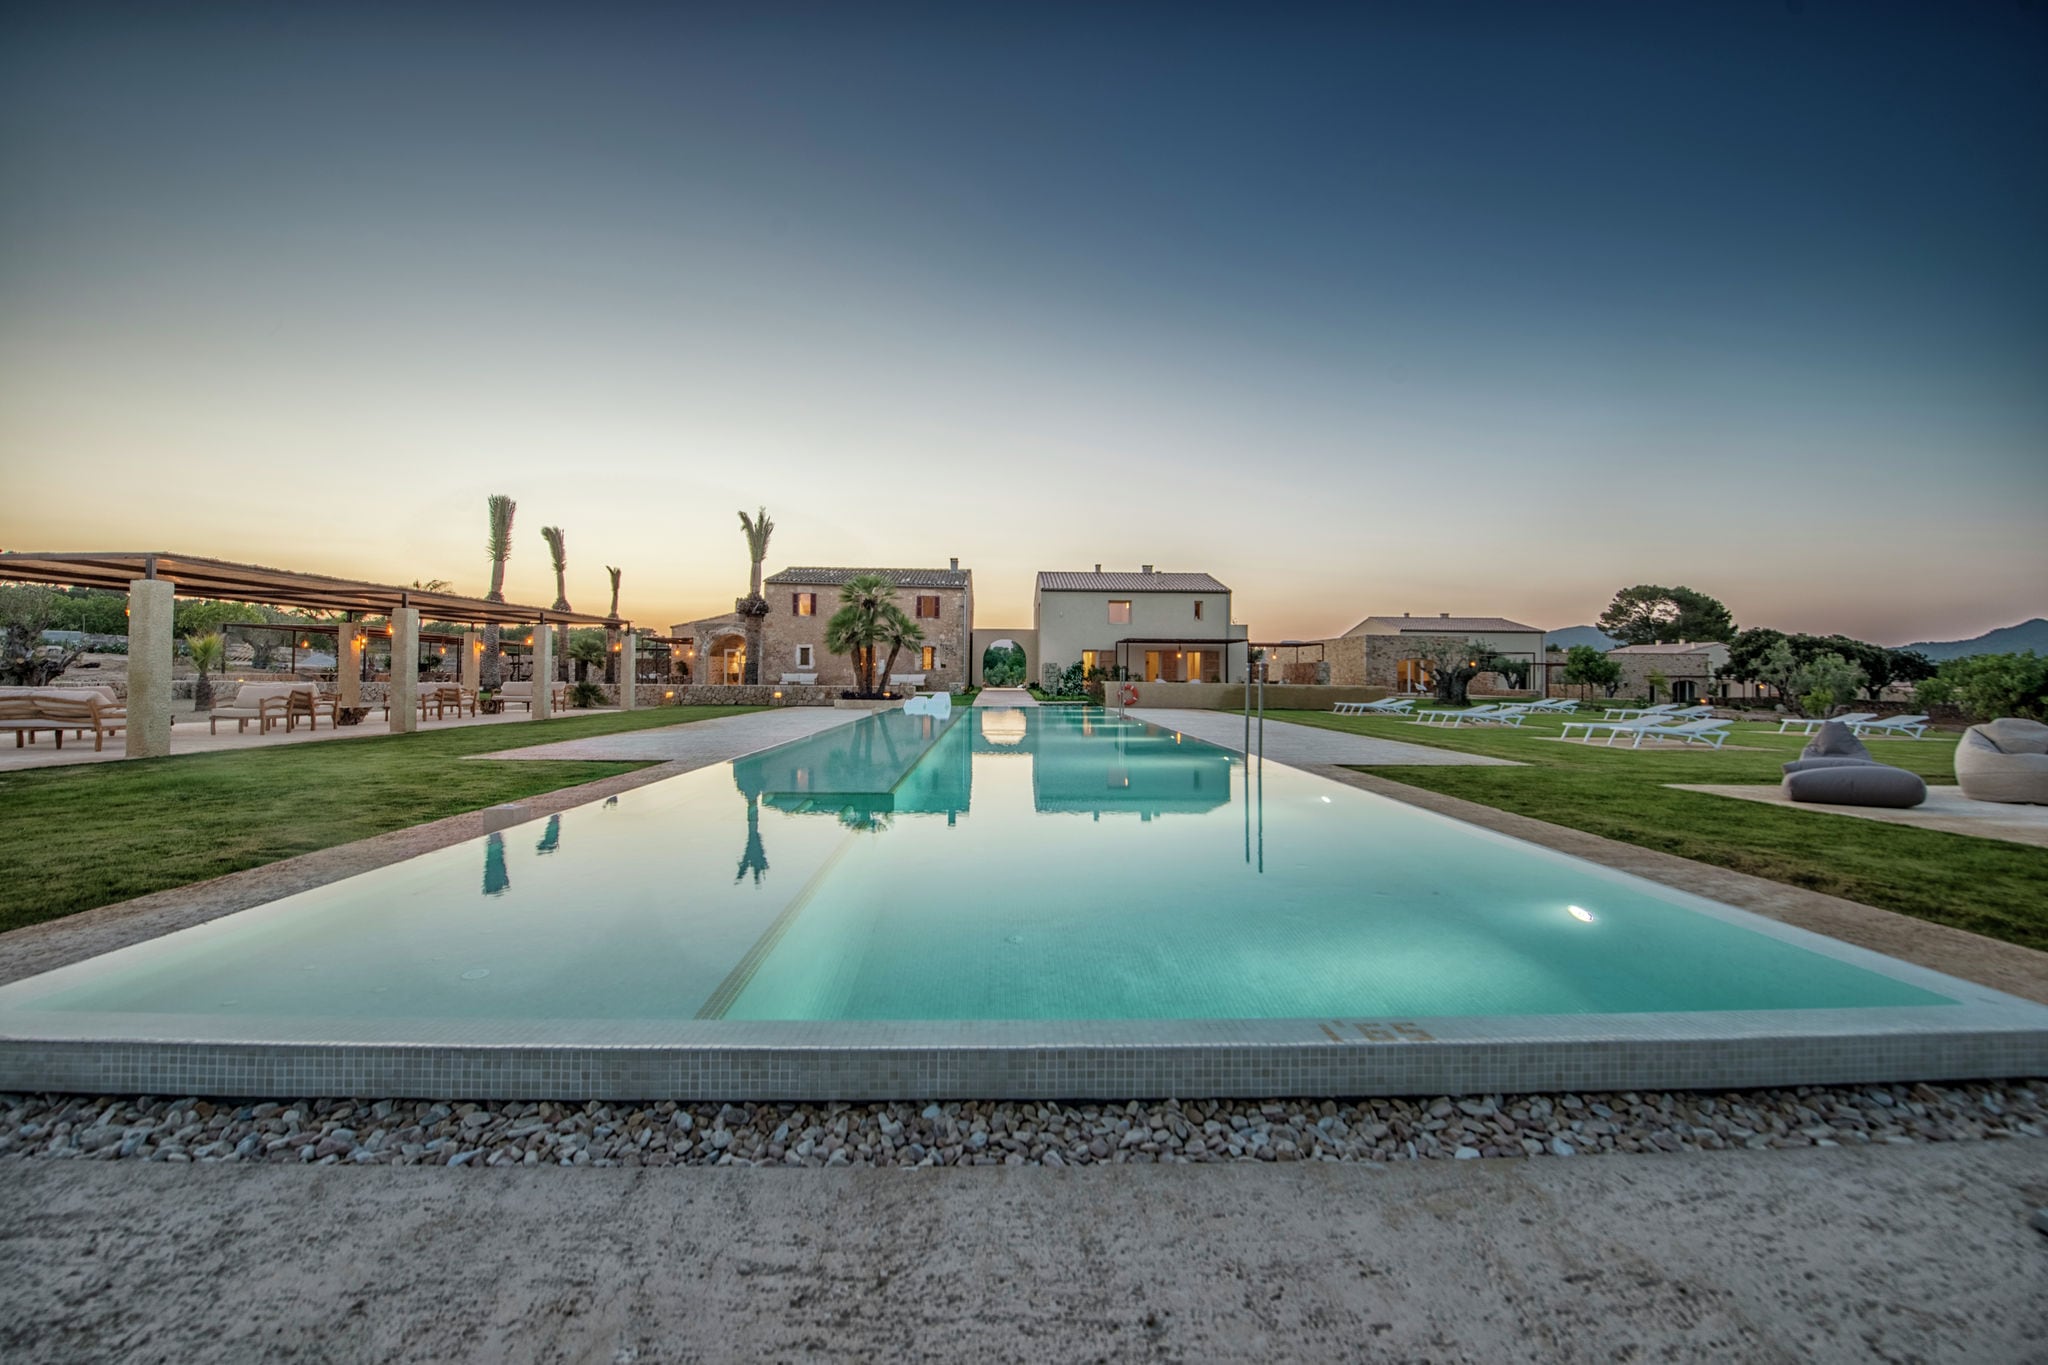 Paisible villa avec piscine à Sant Llorenç des Cardassar